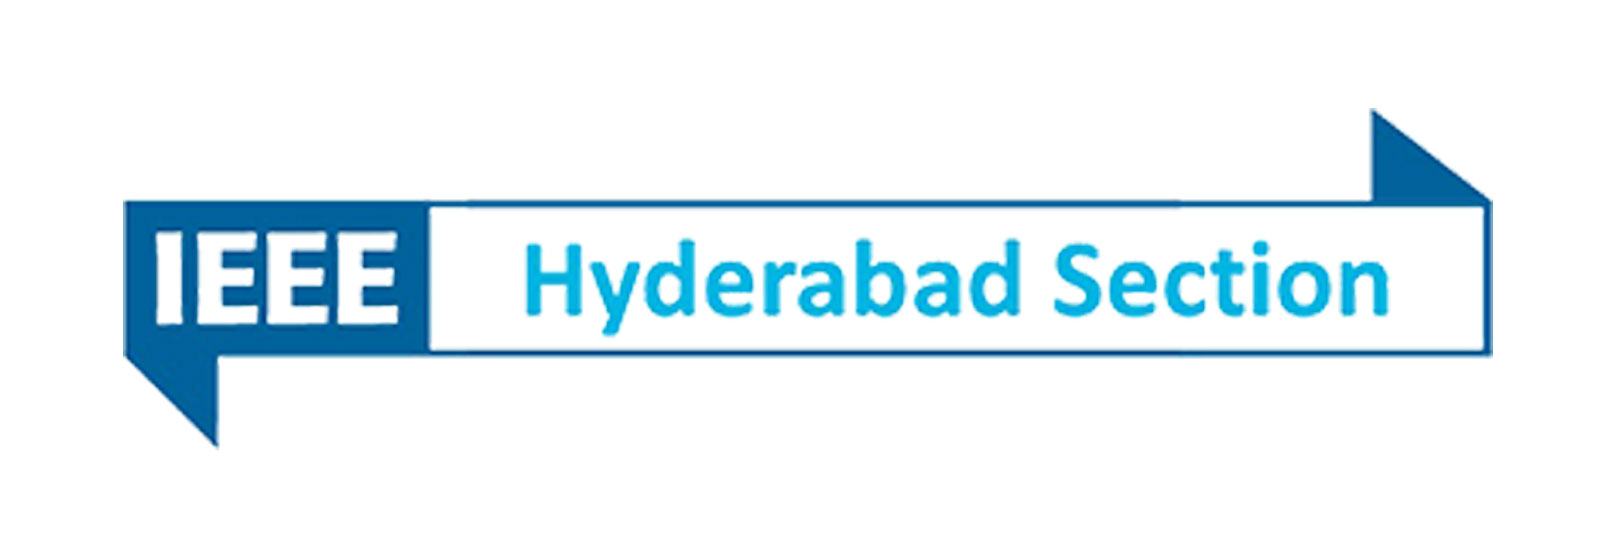 IEEE Hyderabad